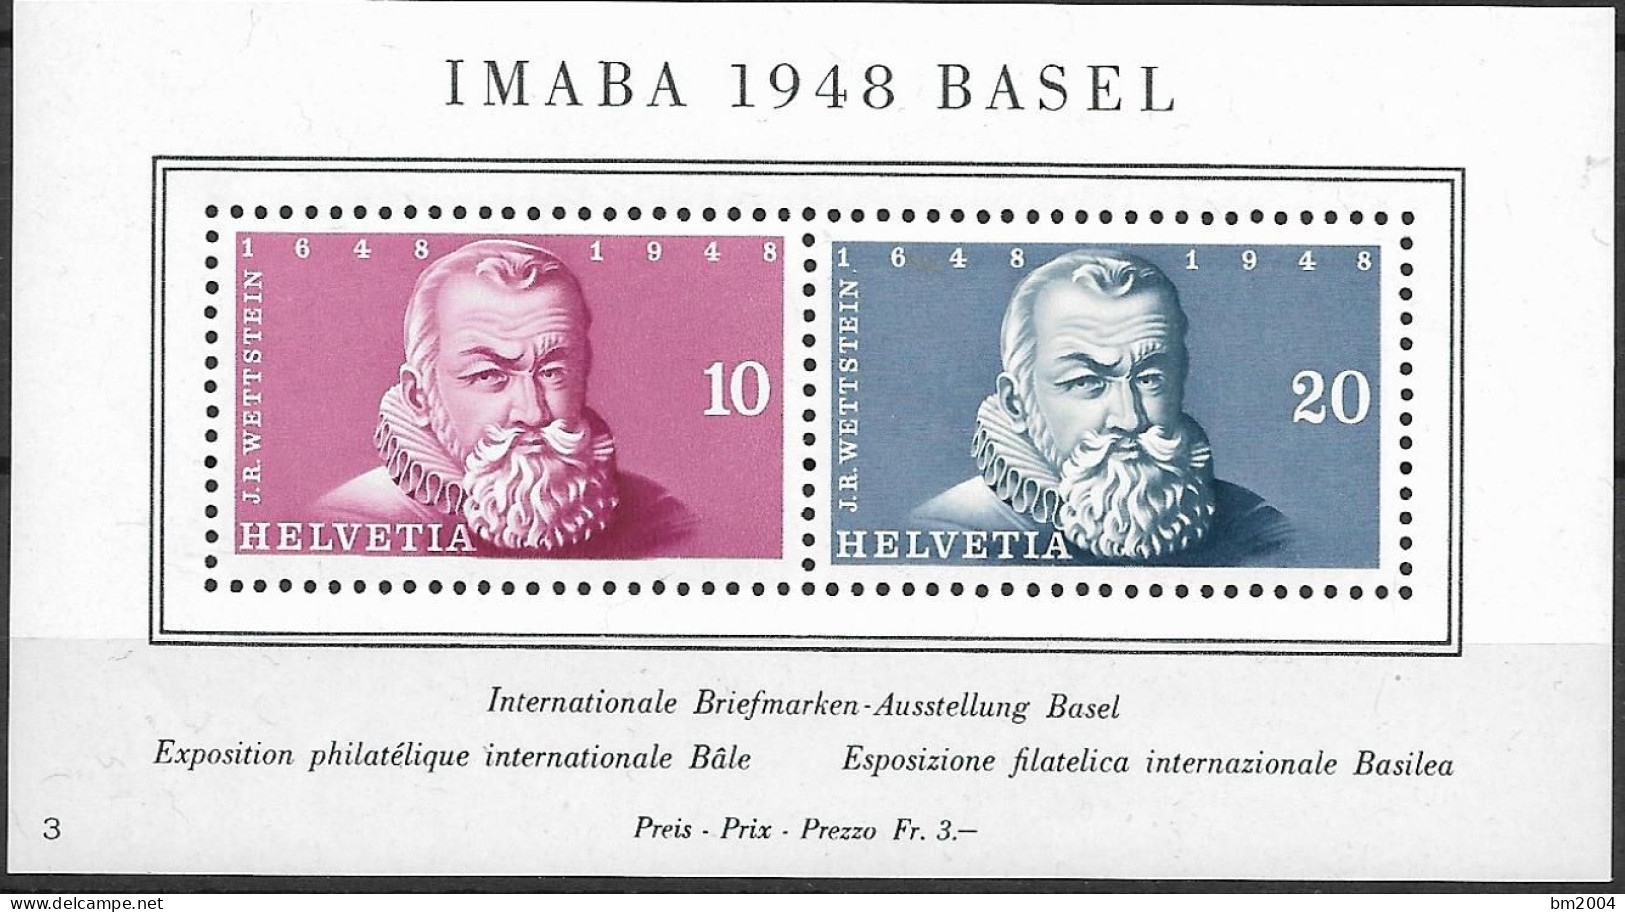 1948 Schweiz Mi. Bl. 13**MNH Internationale Briefmarkenausstellung IMABA 1948, Basel. - Nuovi